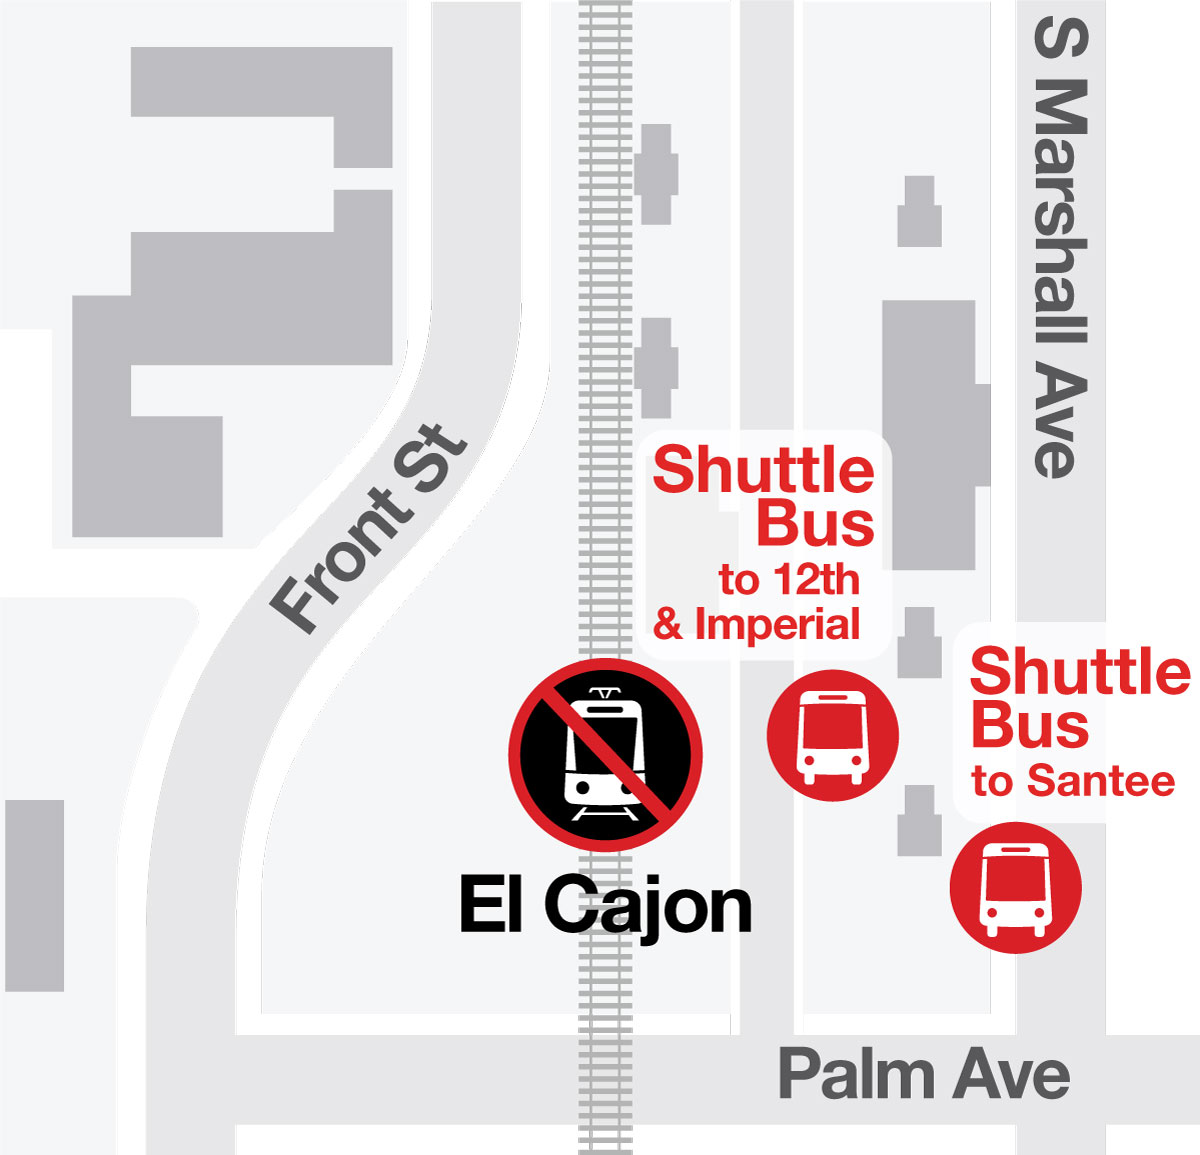 El Cajon Transit Center - Bus Stop Map